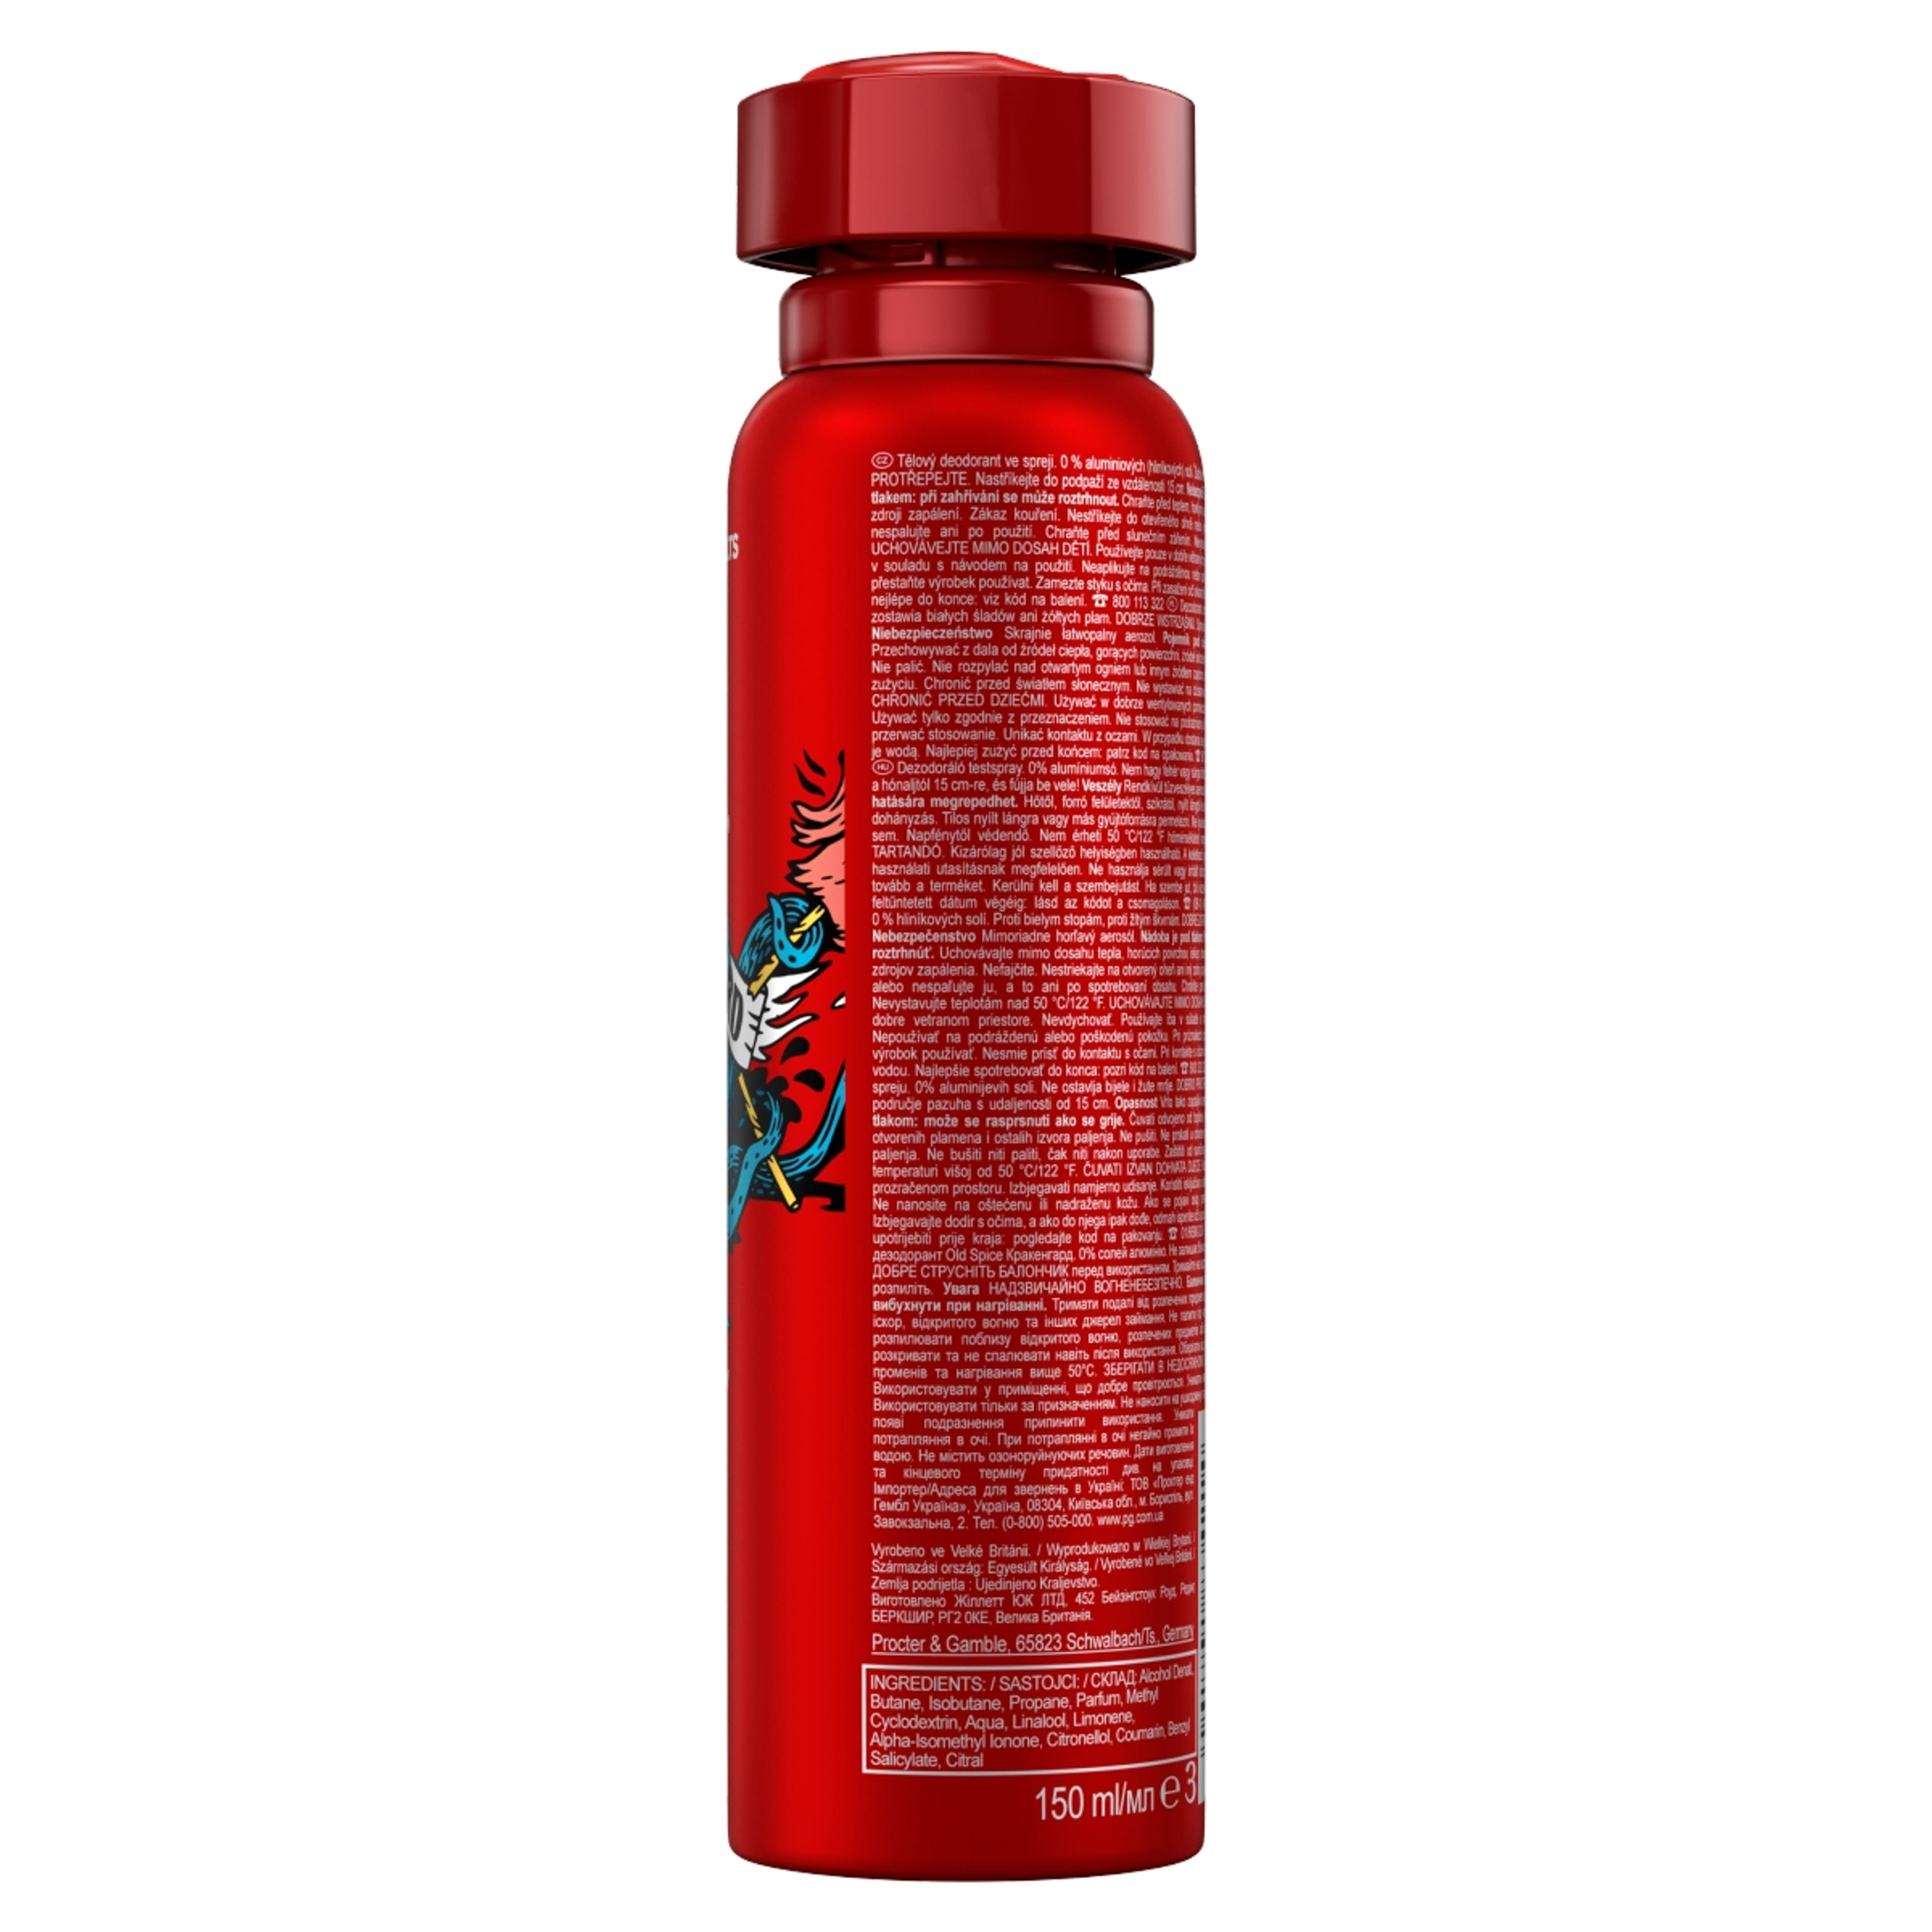 Old Spice deodorant spray krakengard férfi - 150 ml-2